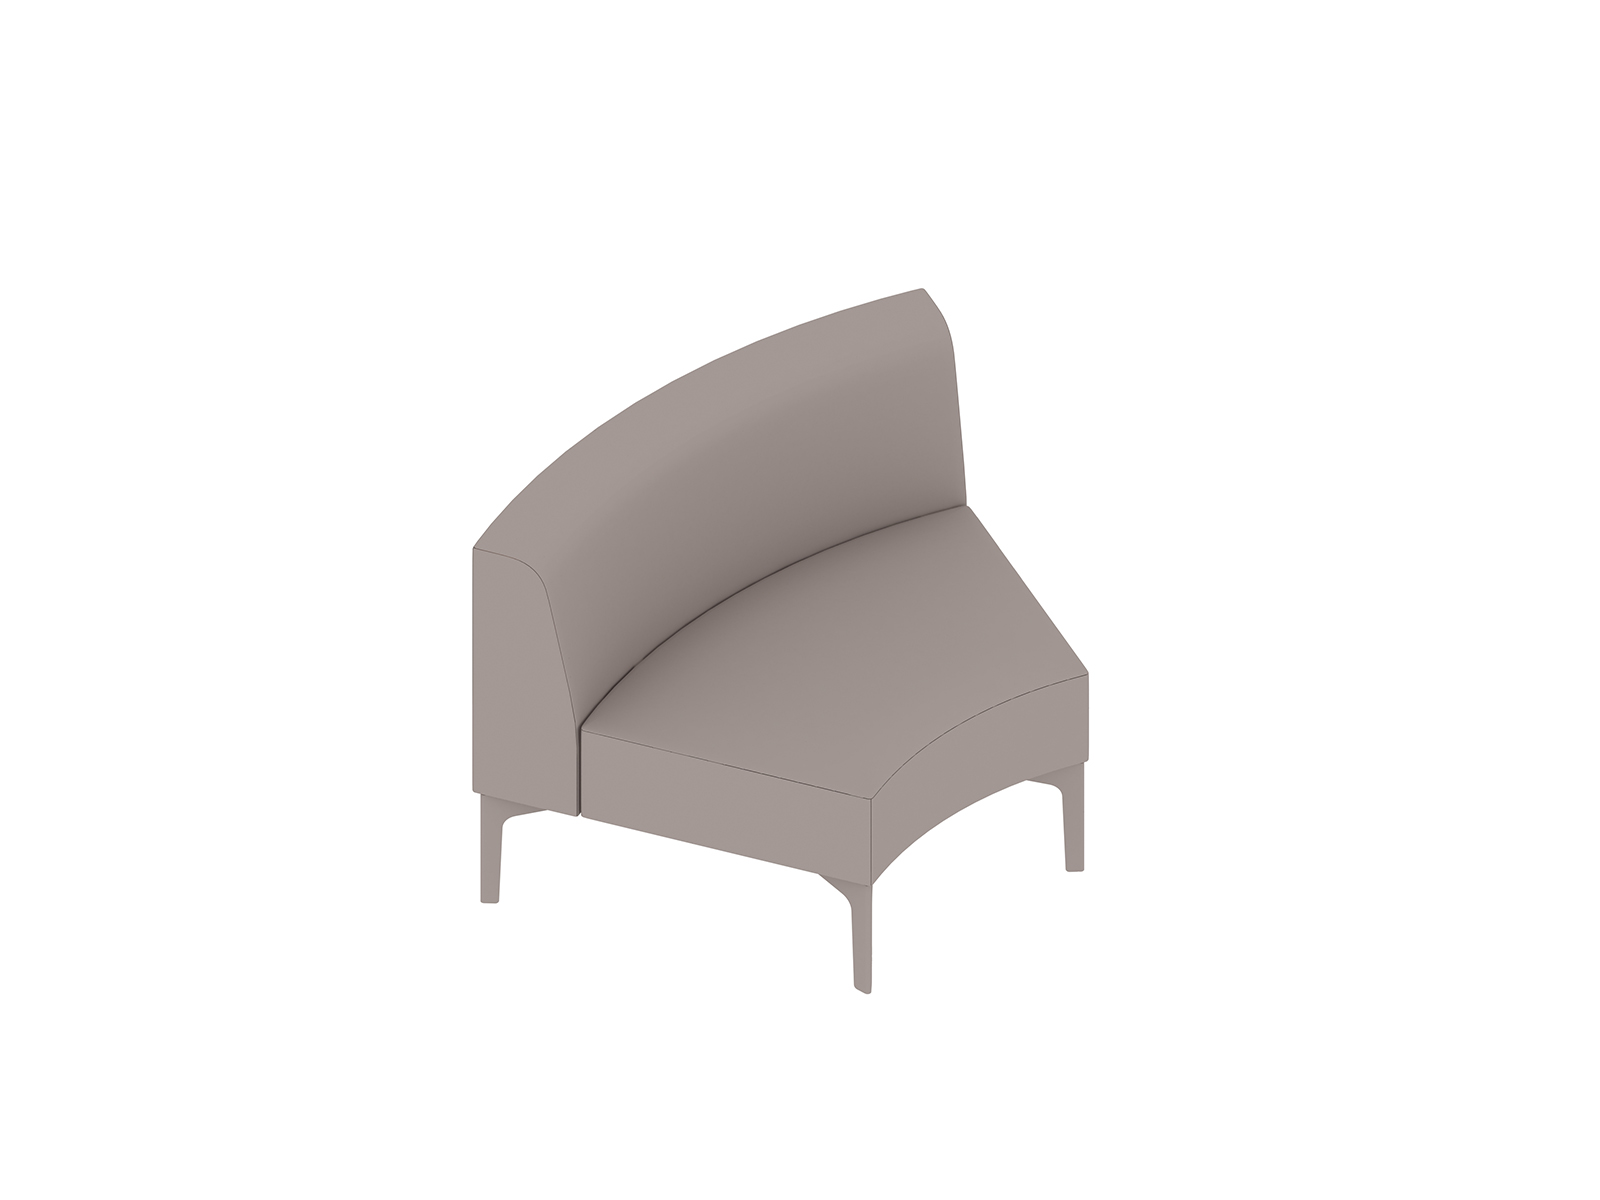 Een generieke rendering - Symbol modulaire stoelen – boog 45 graden